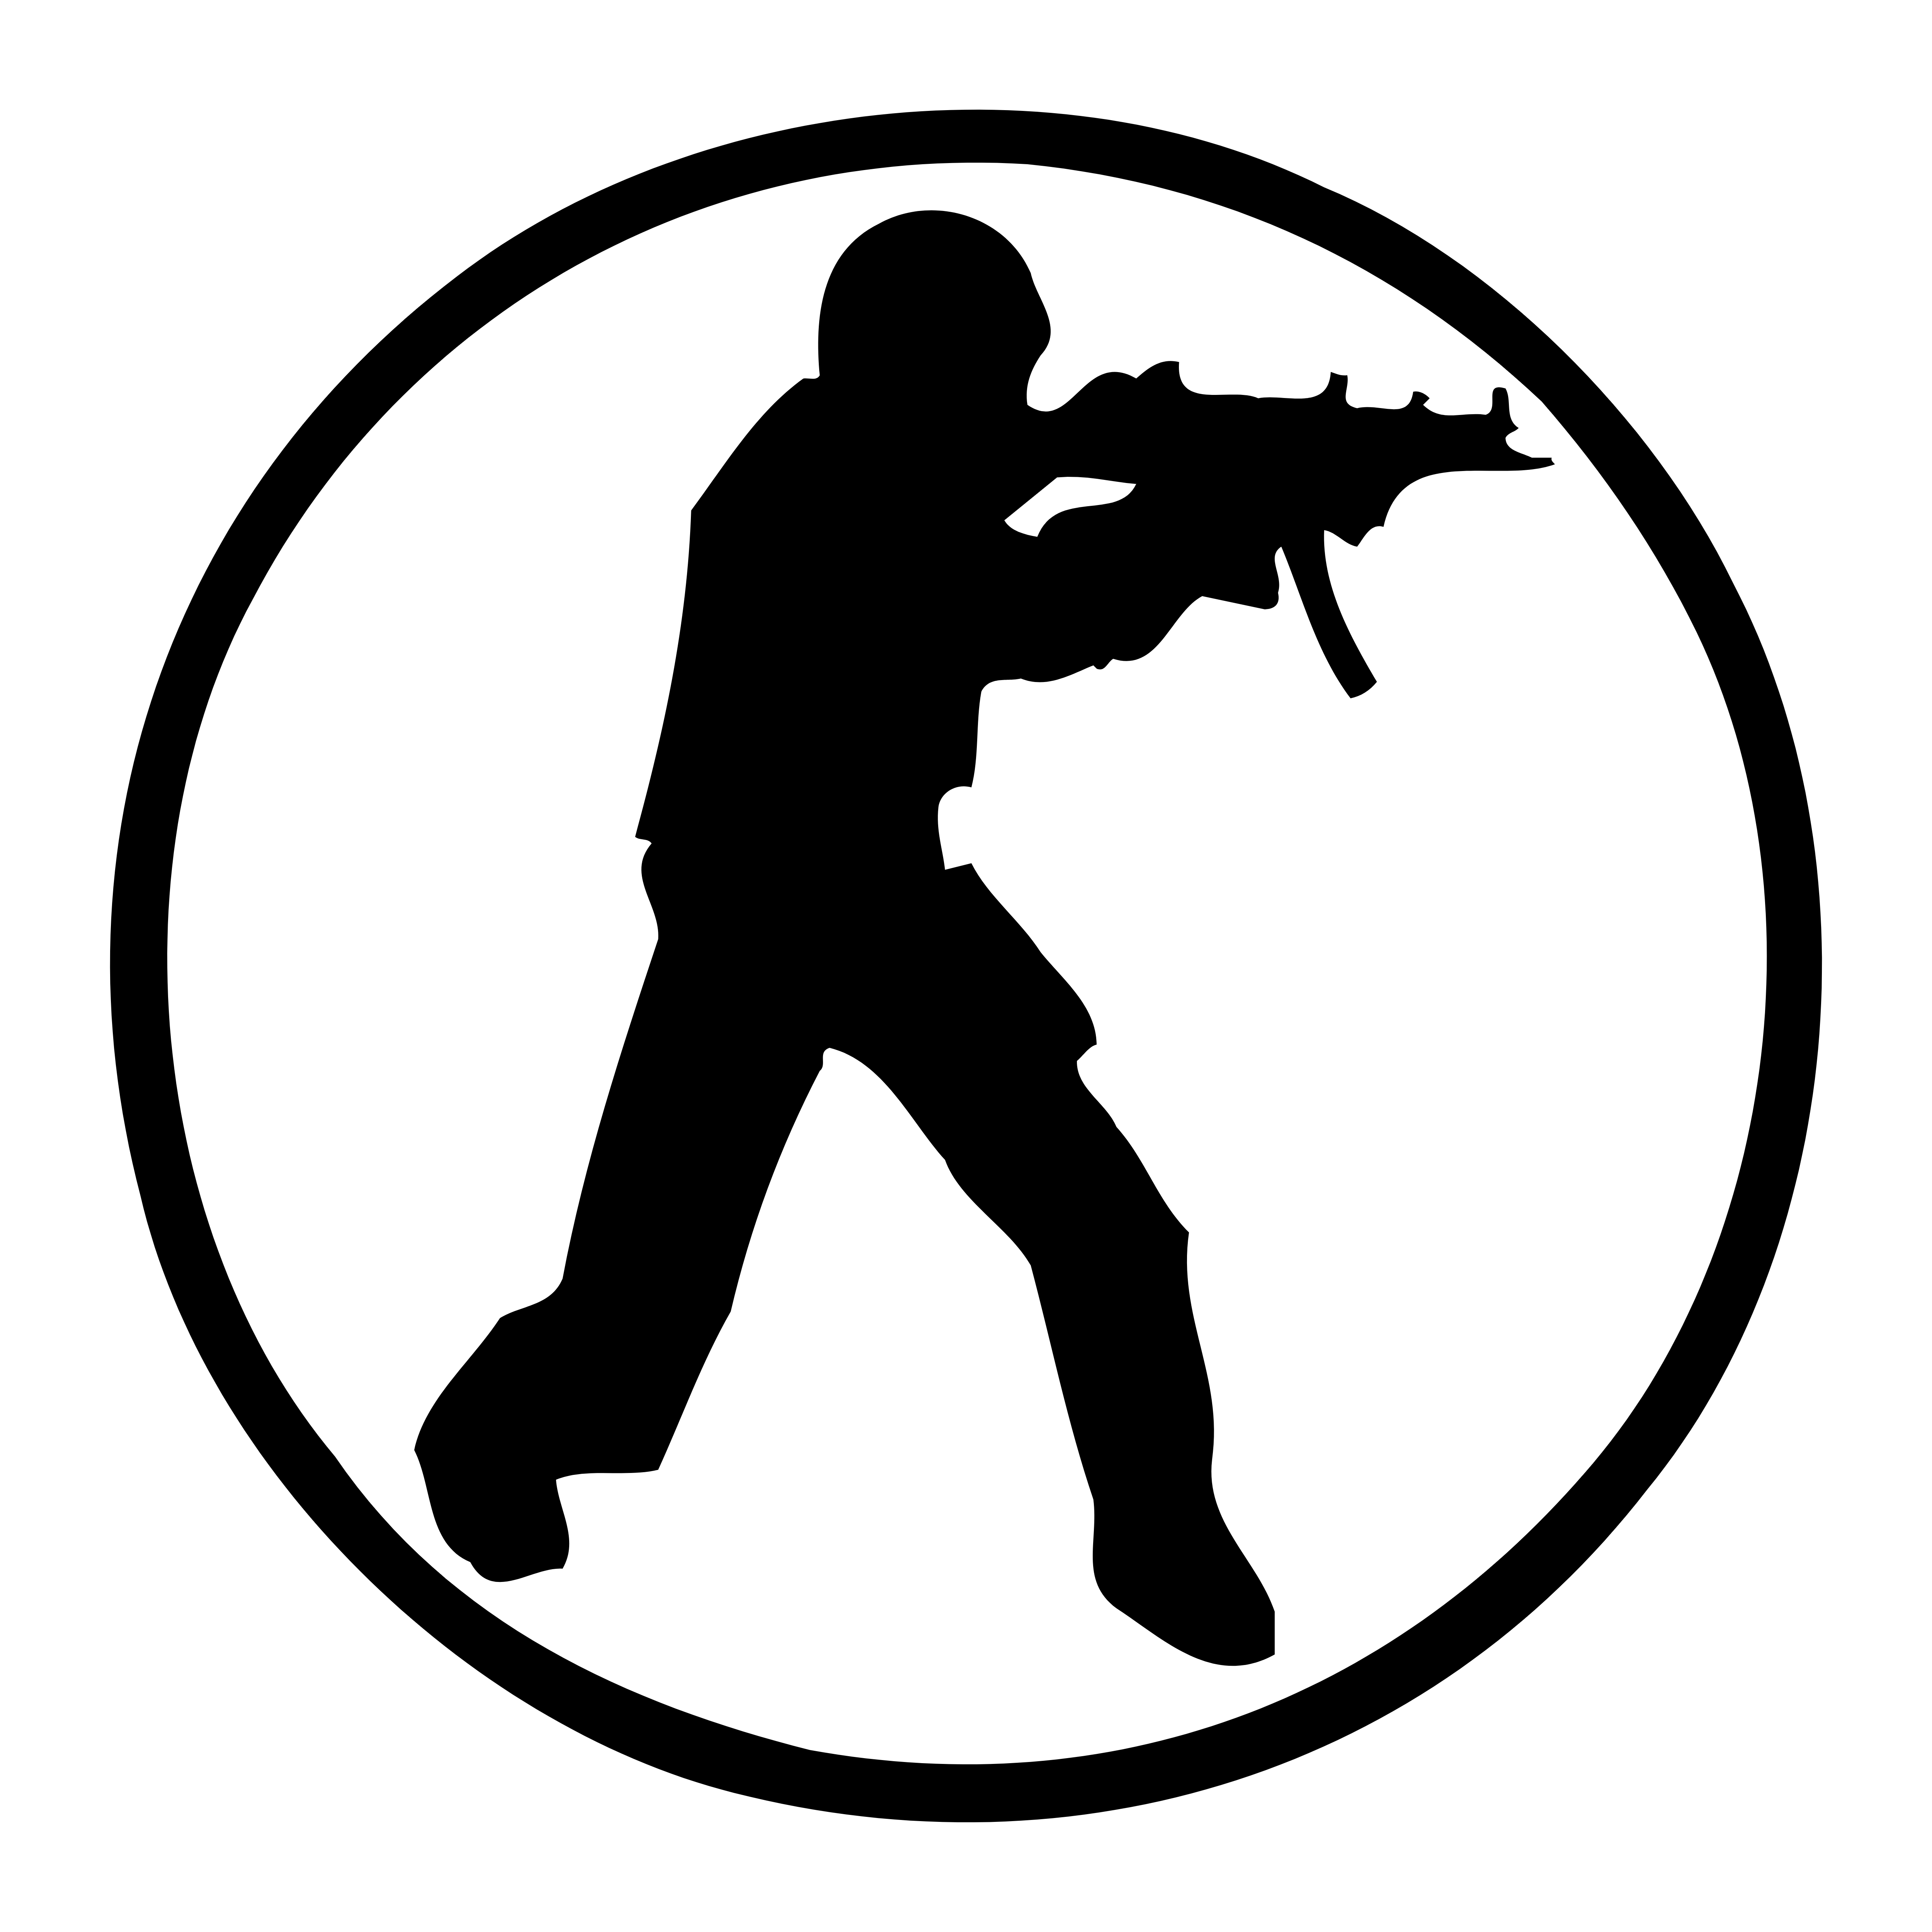 Counter-Strike – Logos Download